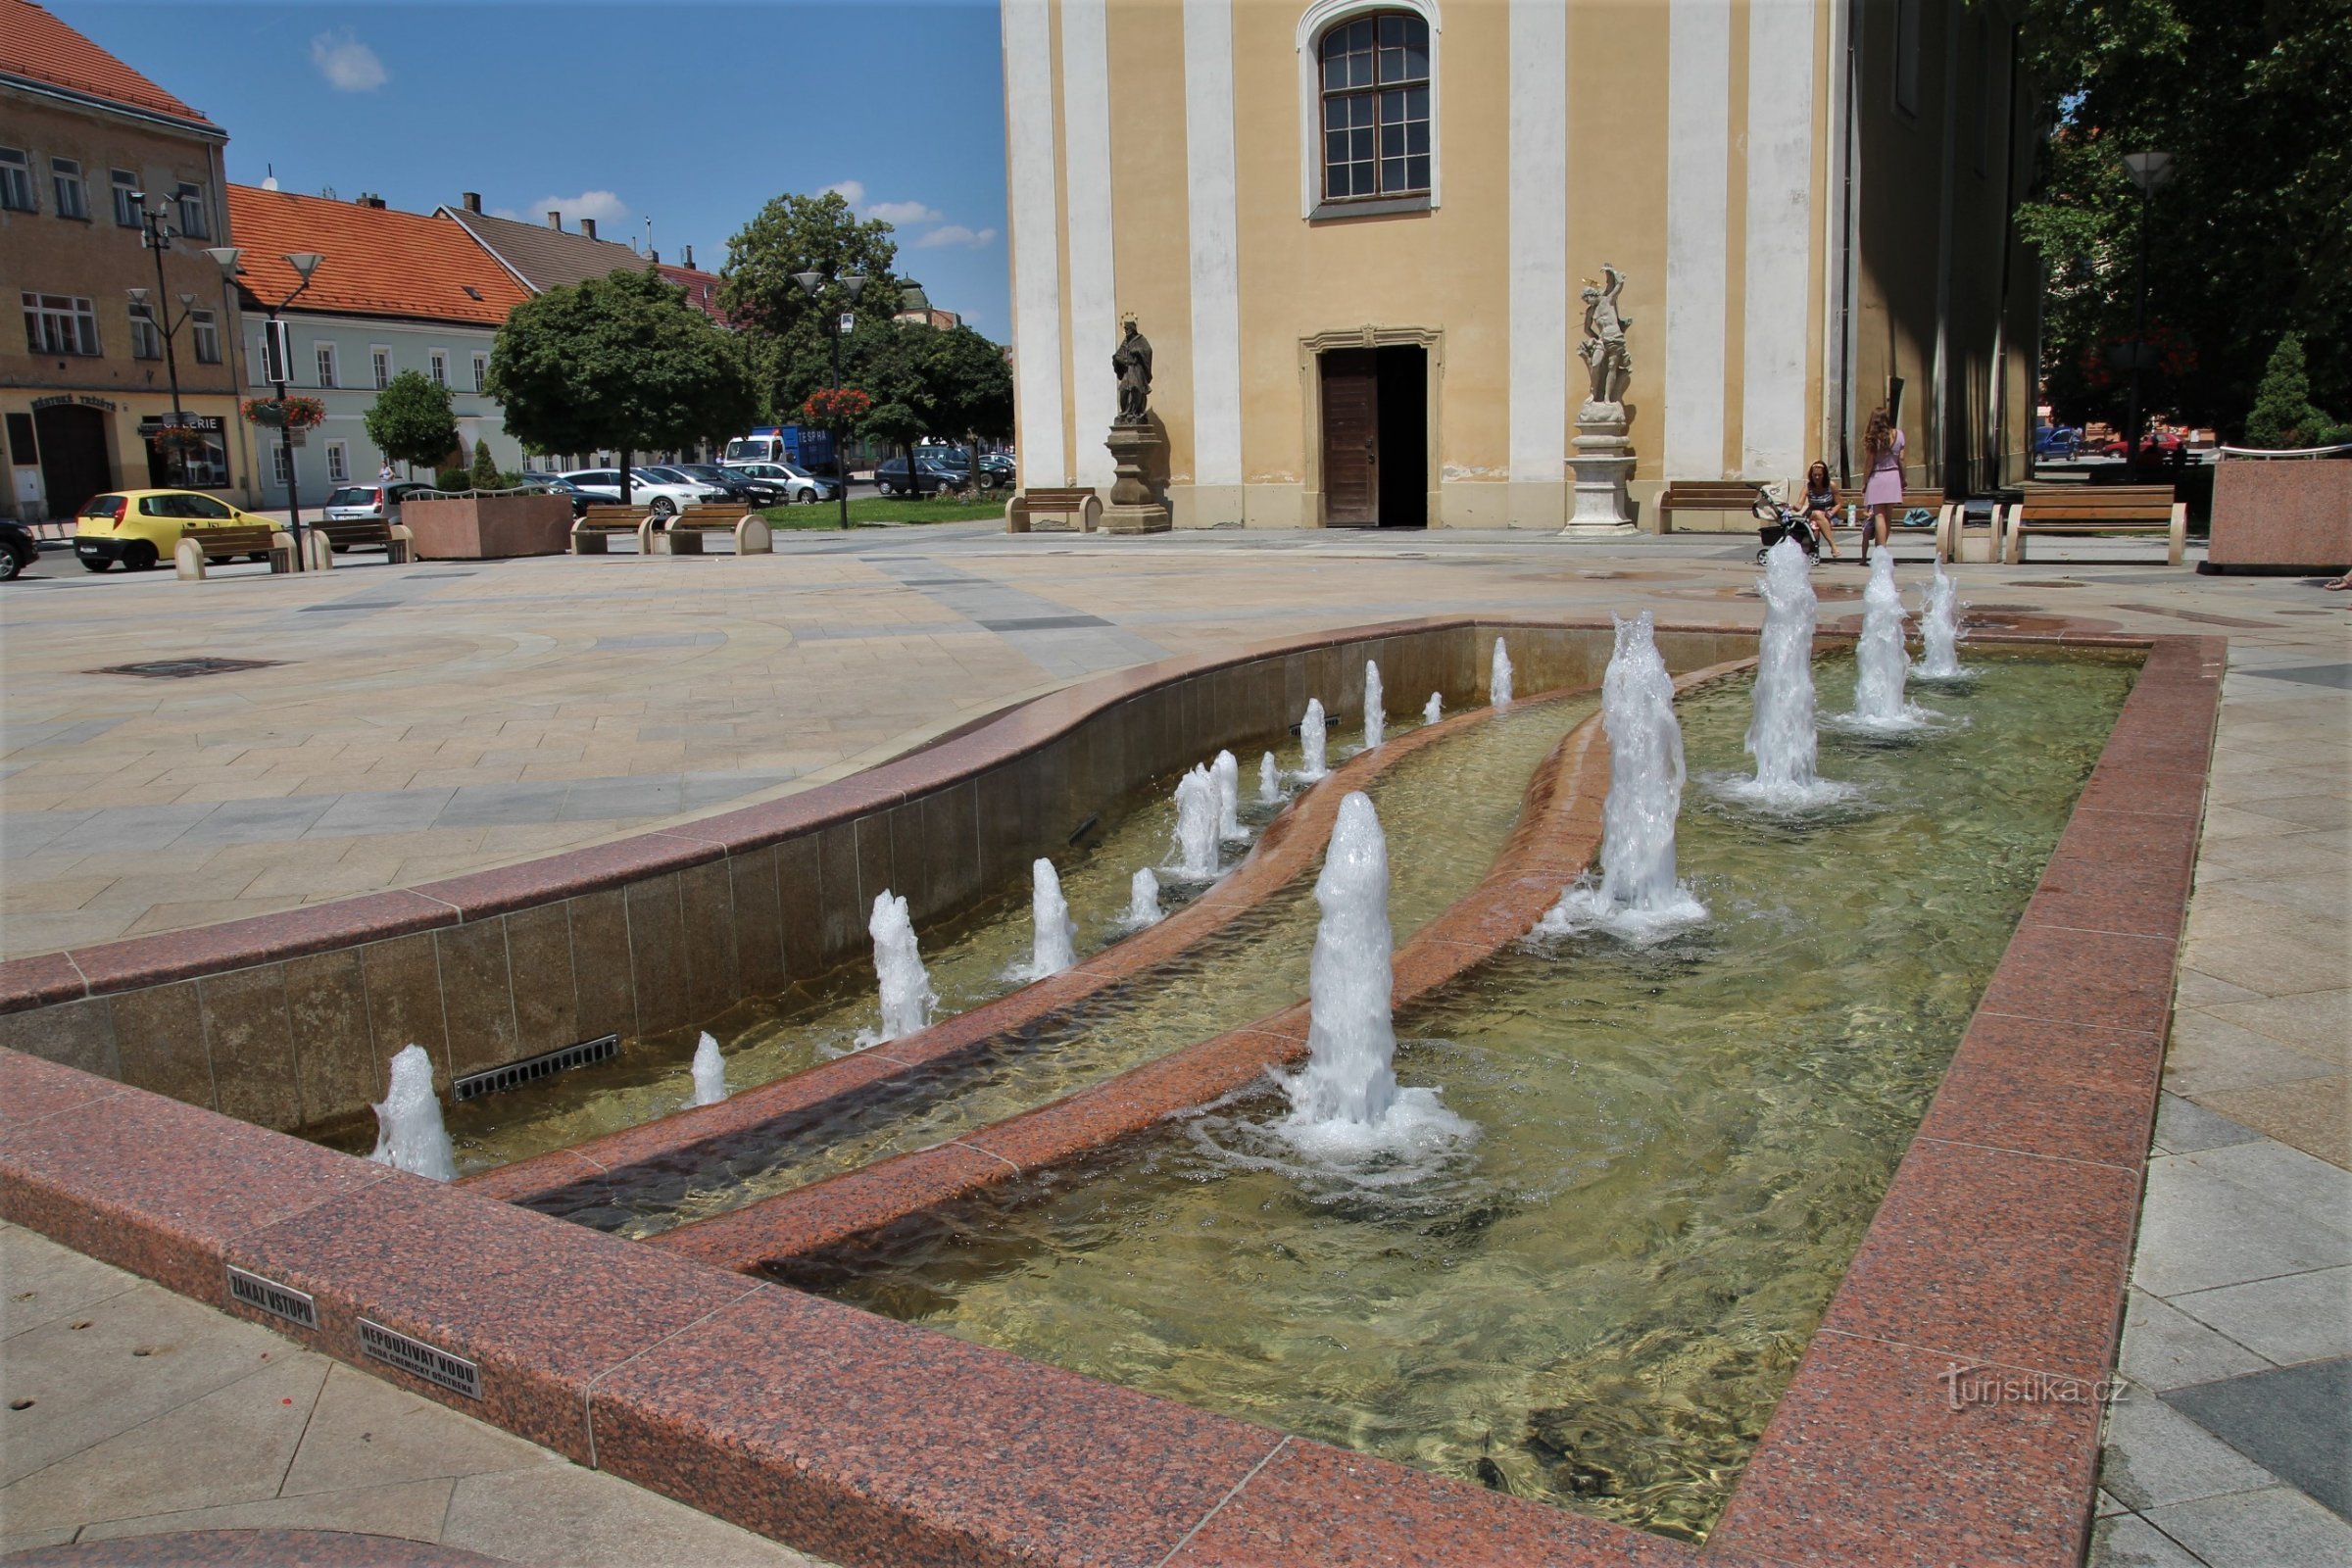 Pjevajuća fontana nalazi se kod crkve sv. Lovre